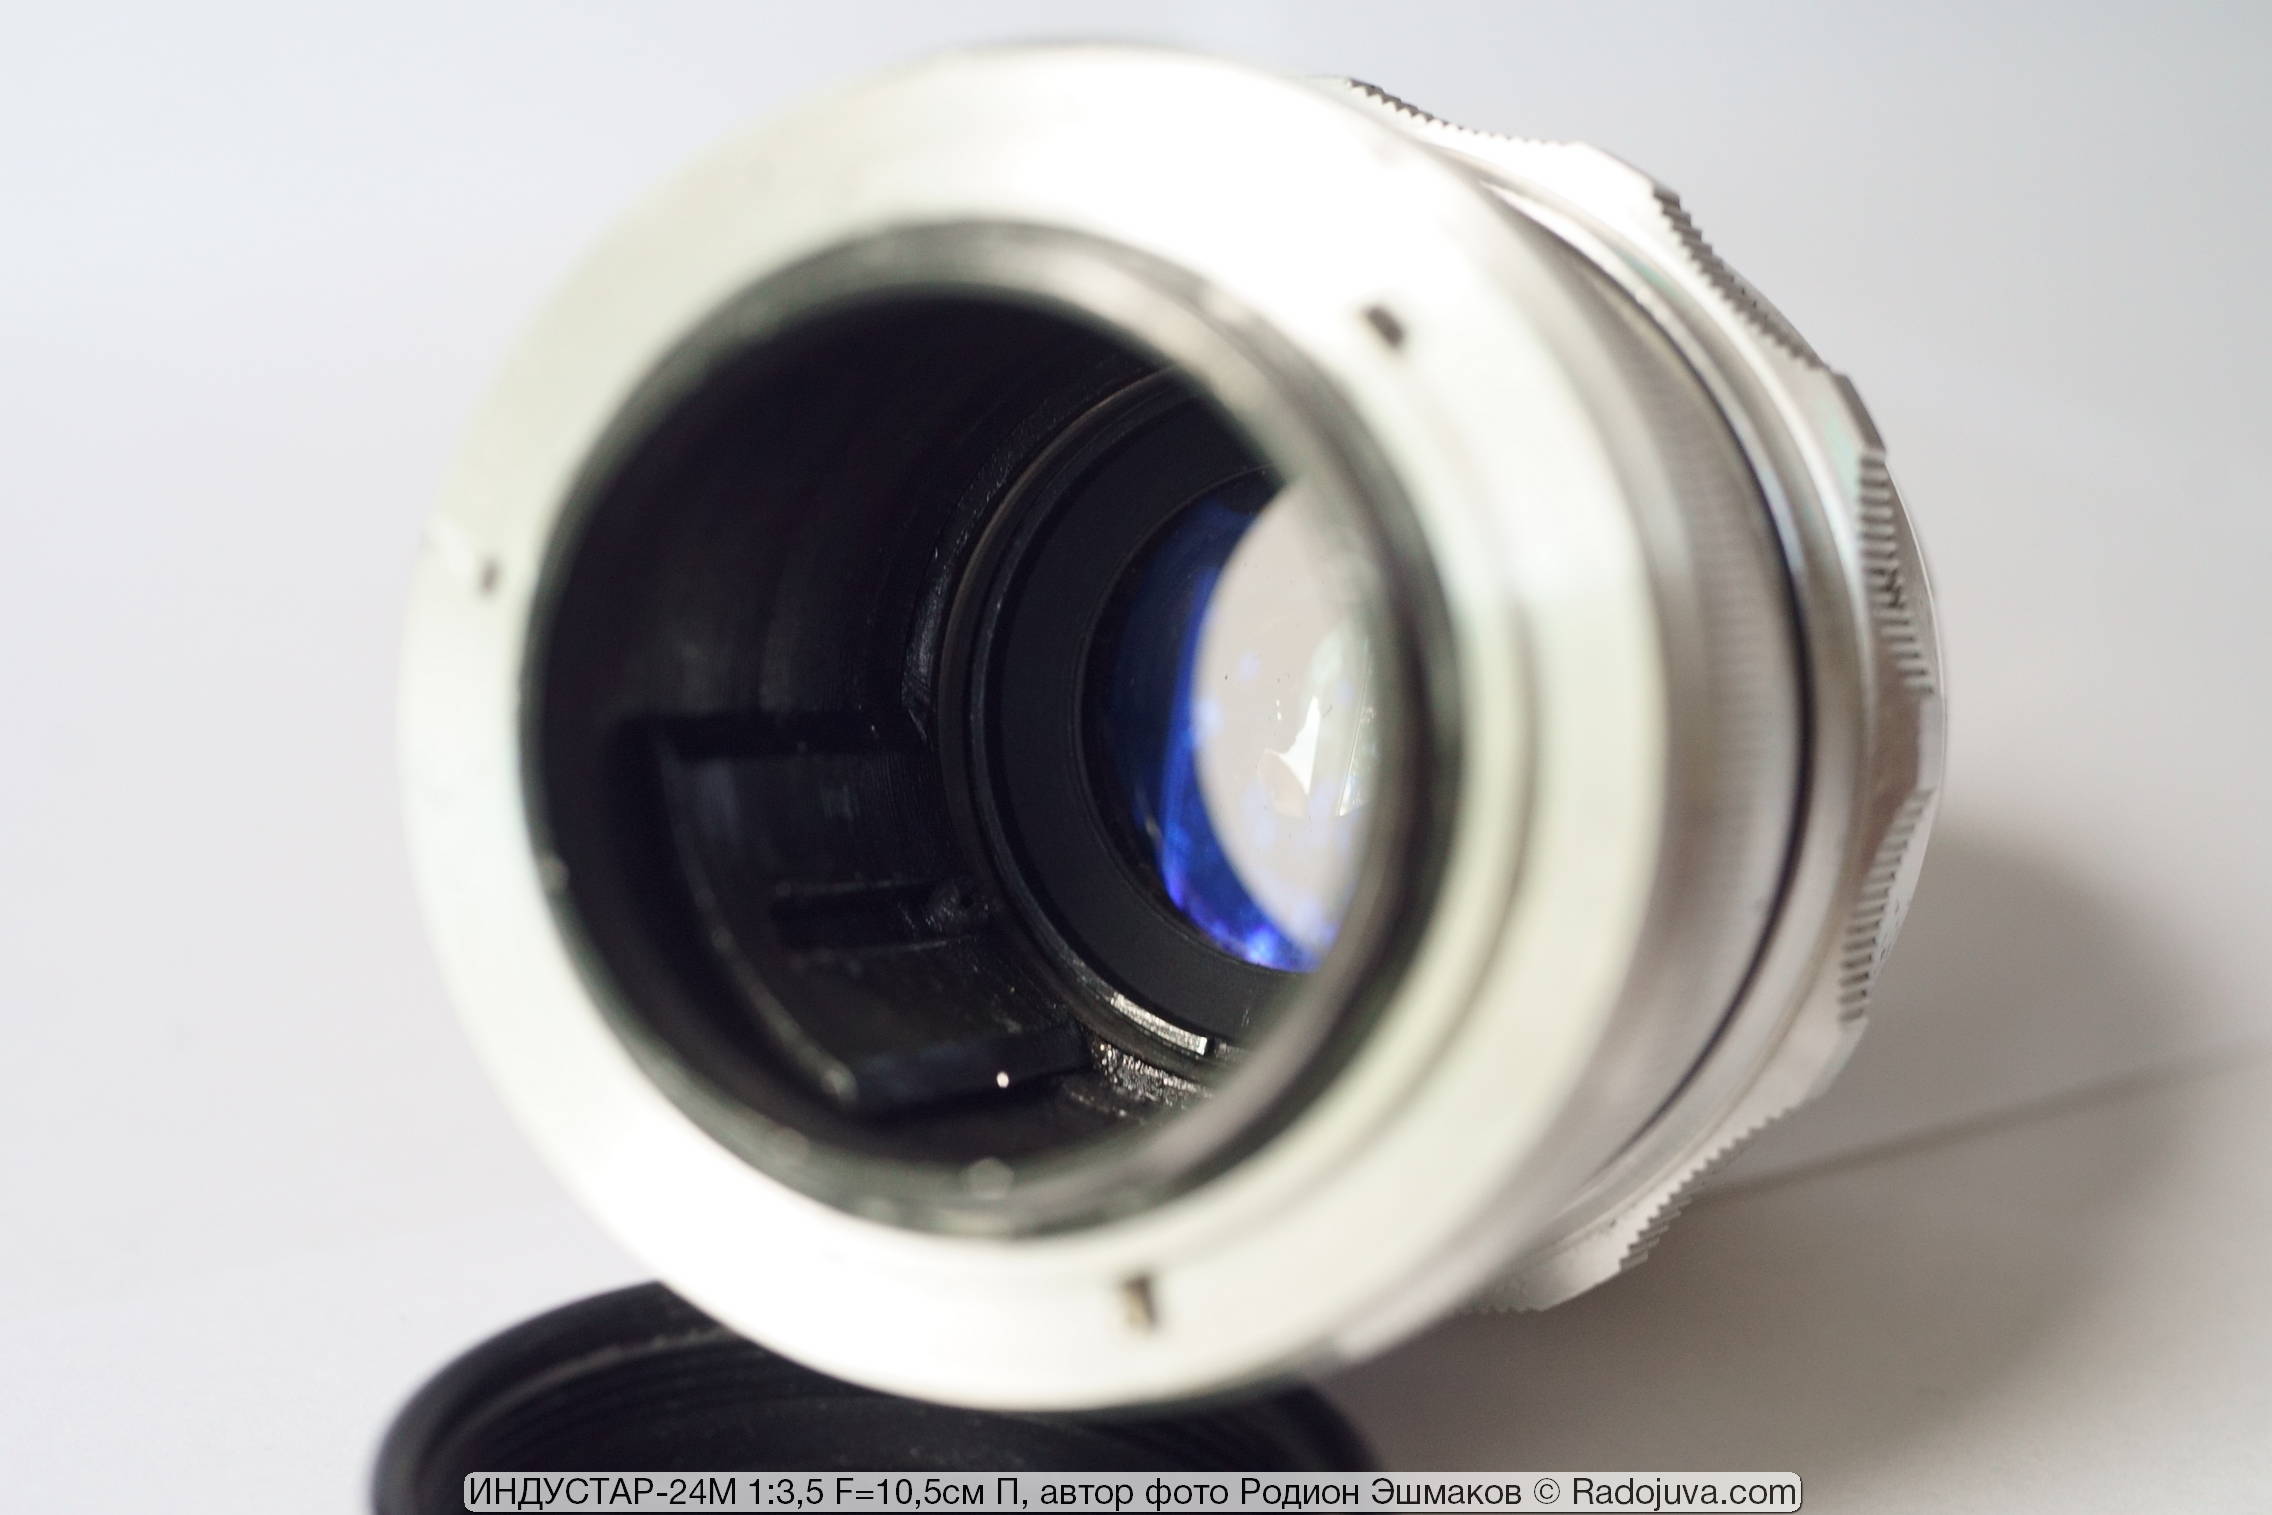 Vista de la lente desde el lado de la caña: Industar y void.